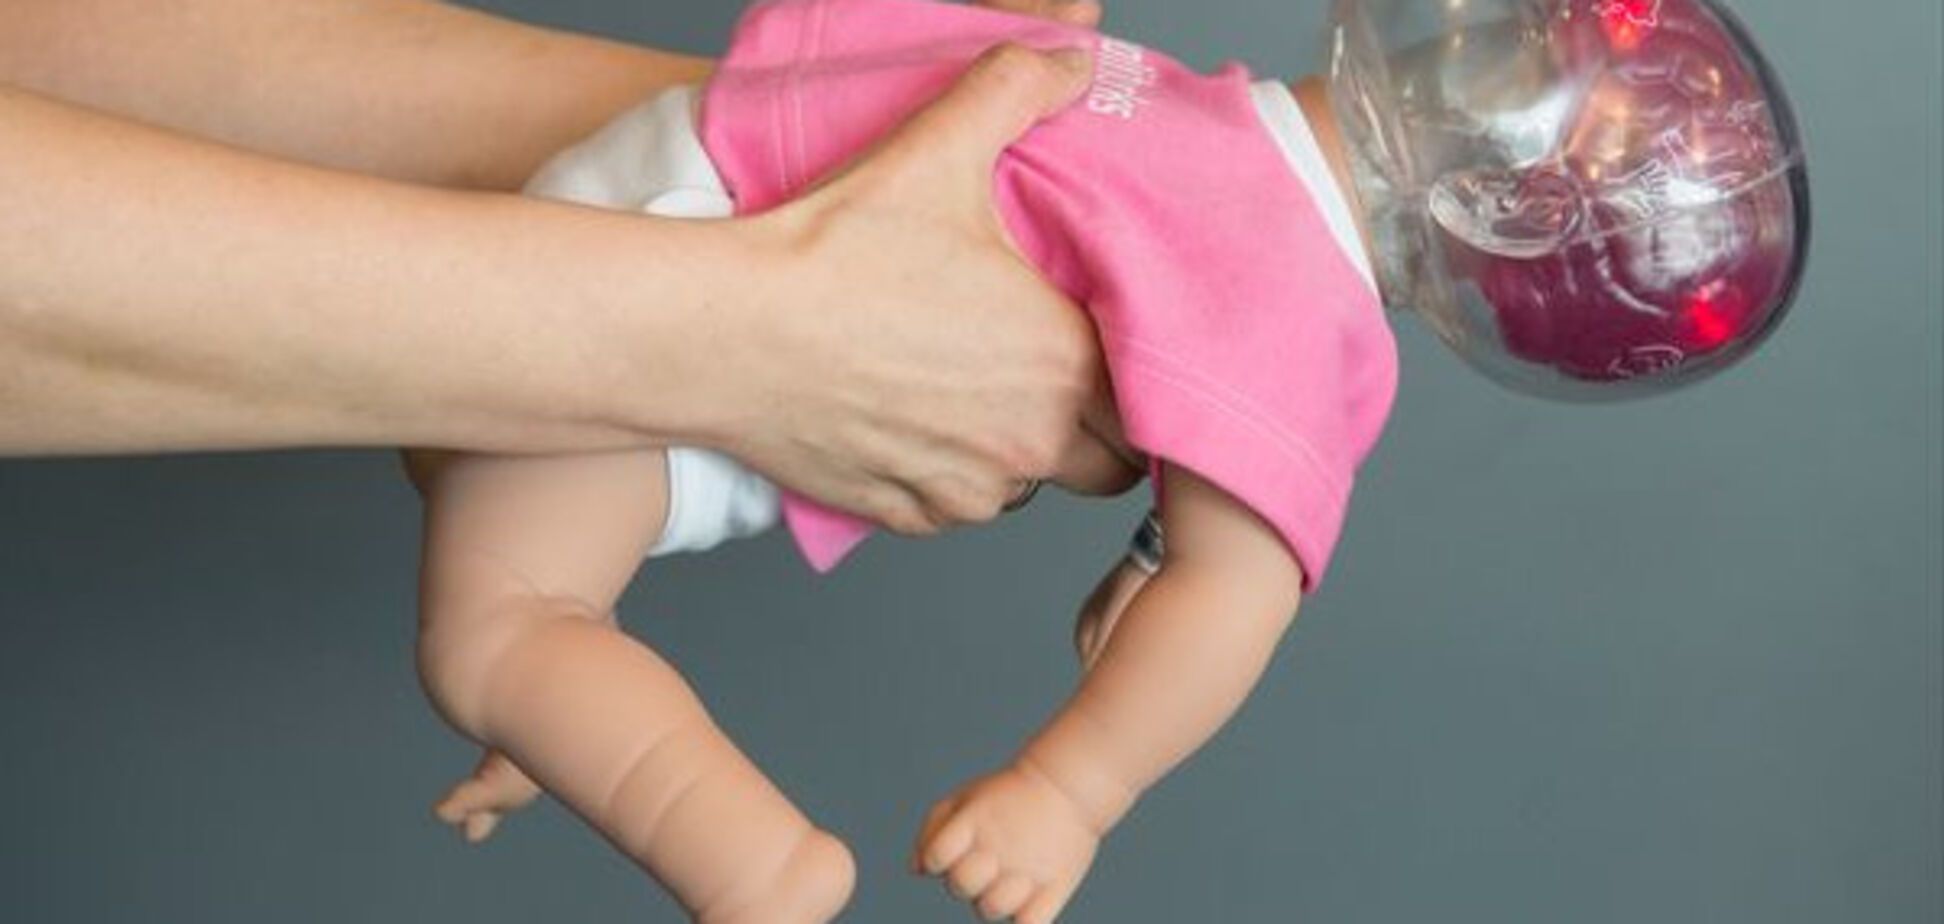 Необратимые повреждения: ученые о том, что происходит с мозгом ребенка при встряхивании